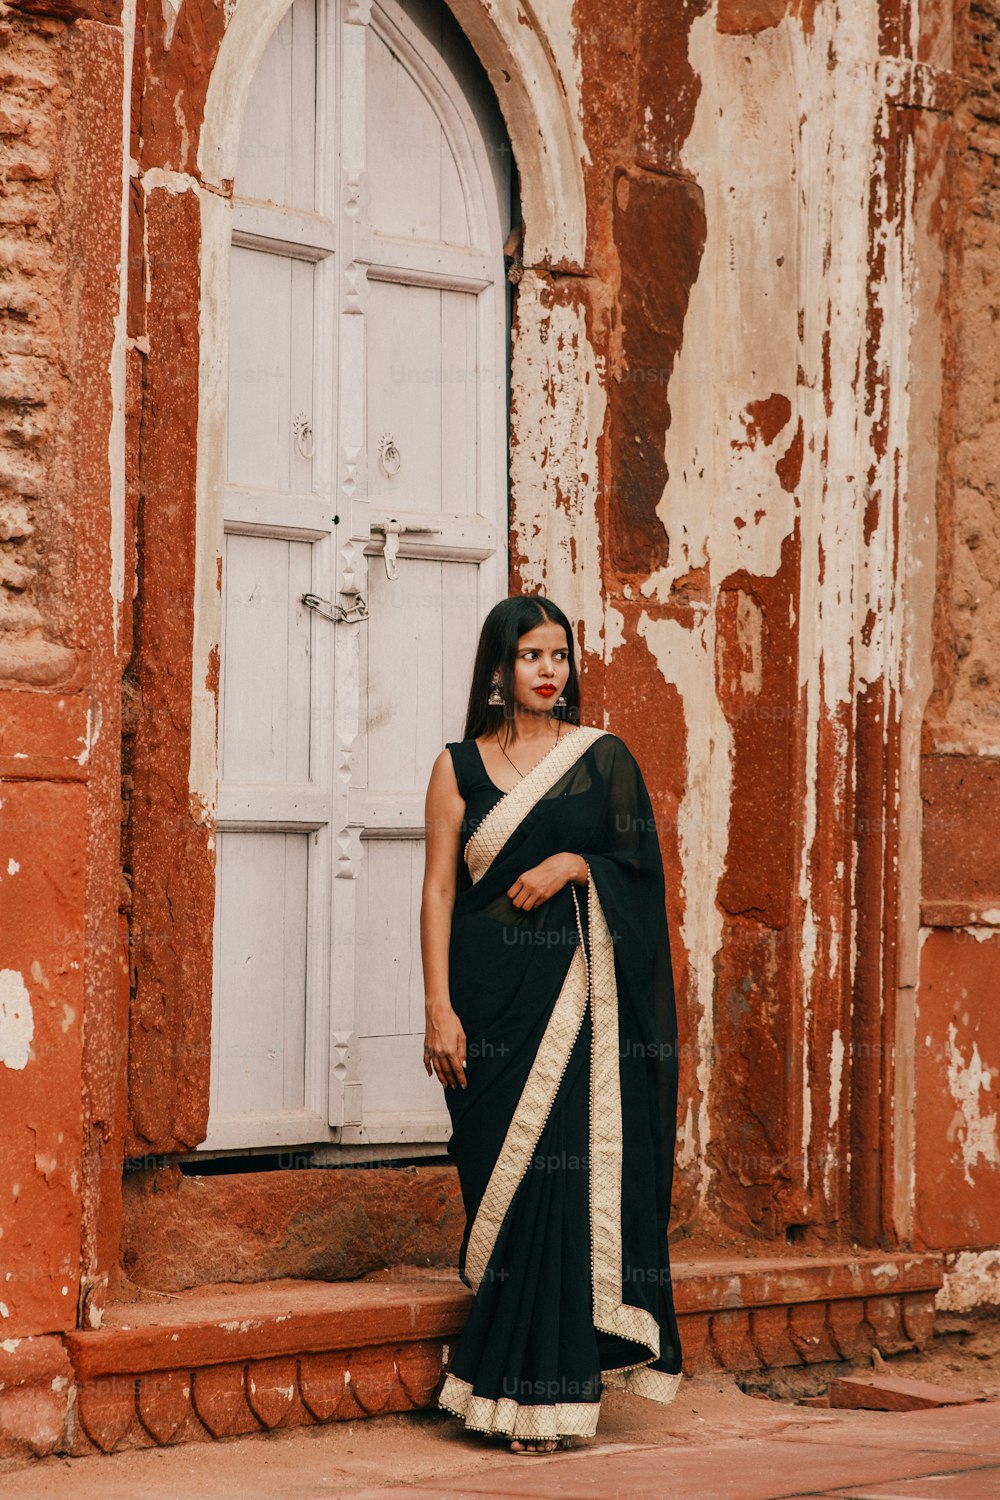 Una mujer en un sari blanco y negro de pie frente a una puerta